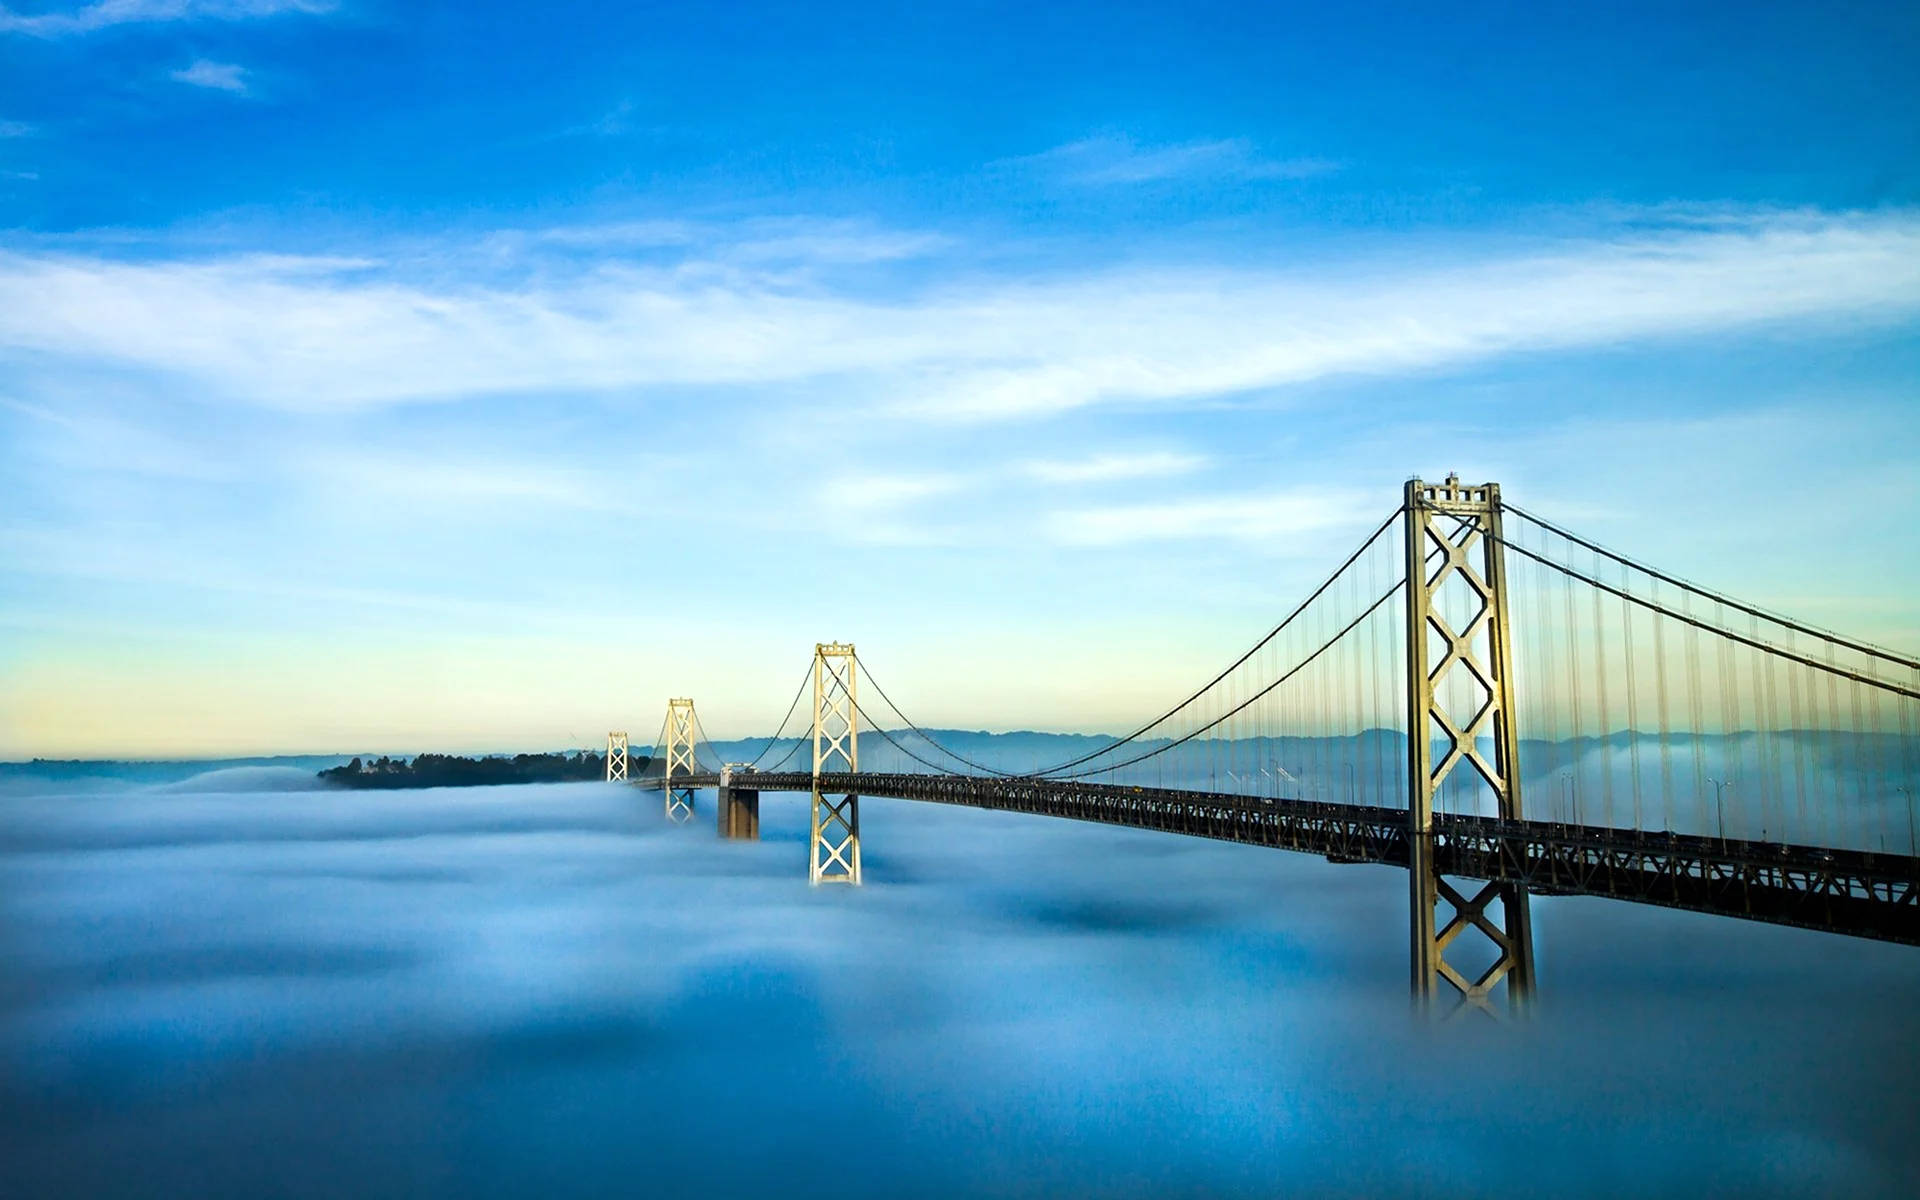 Мост между Сан-Франциско и Оклендом